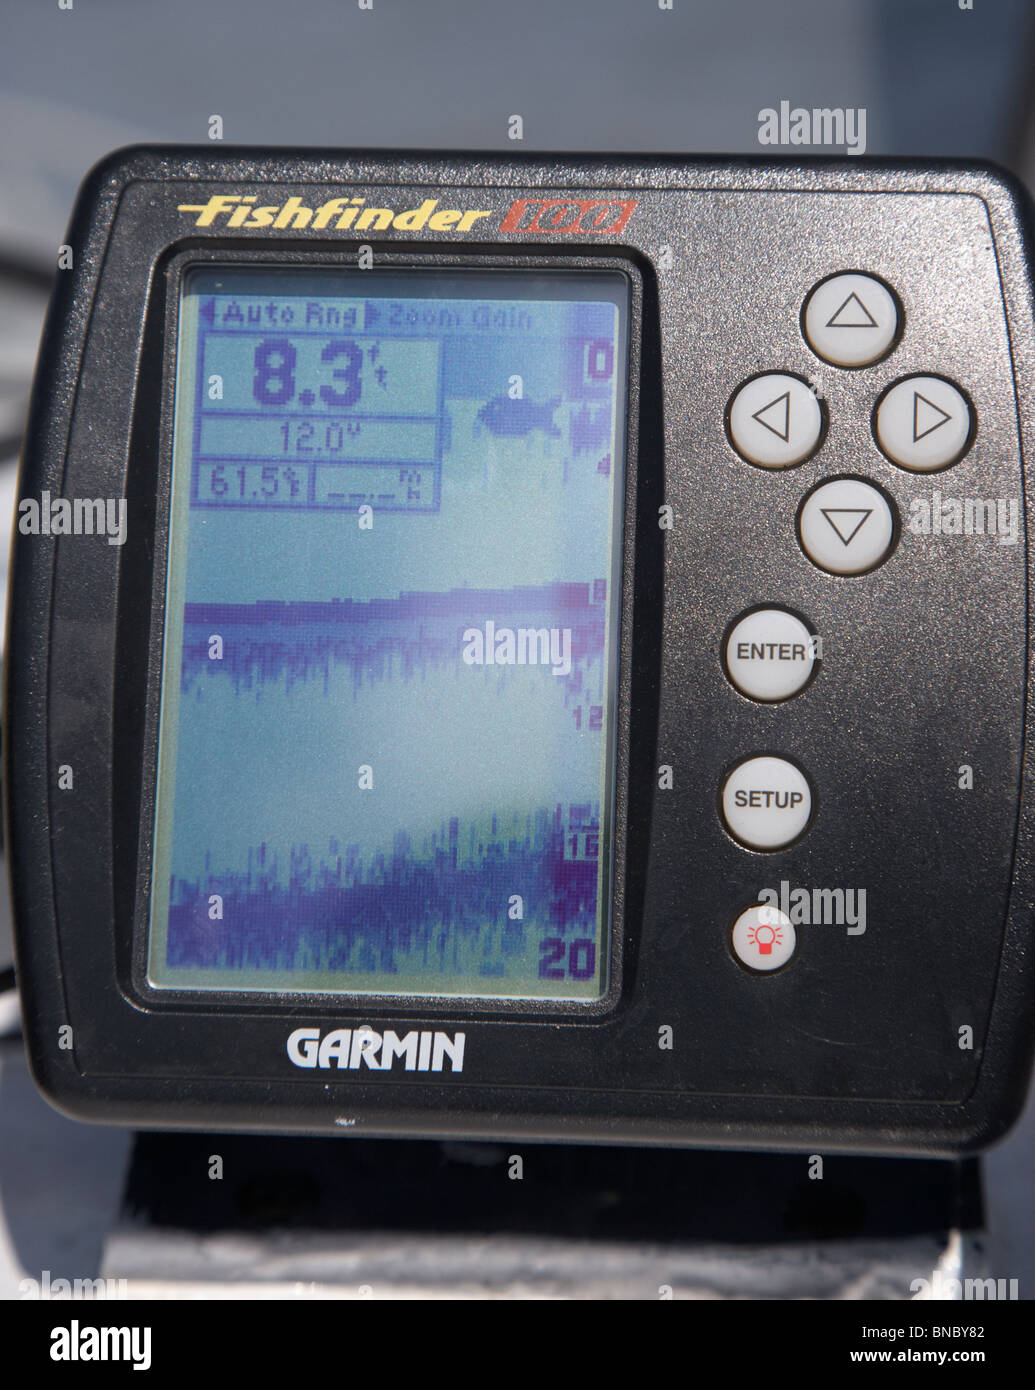 small garmin fishfinder sonar on showing sonar return and fish